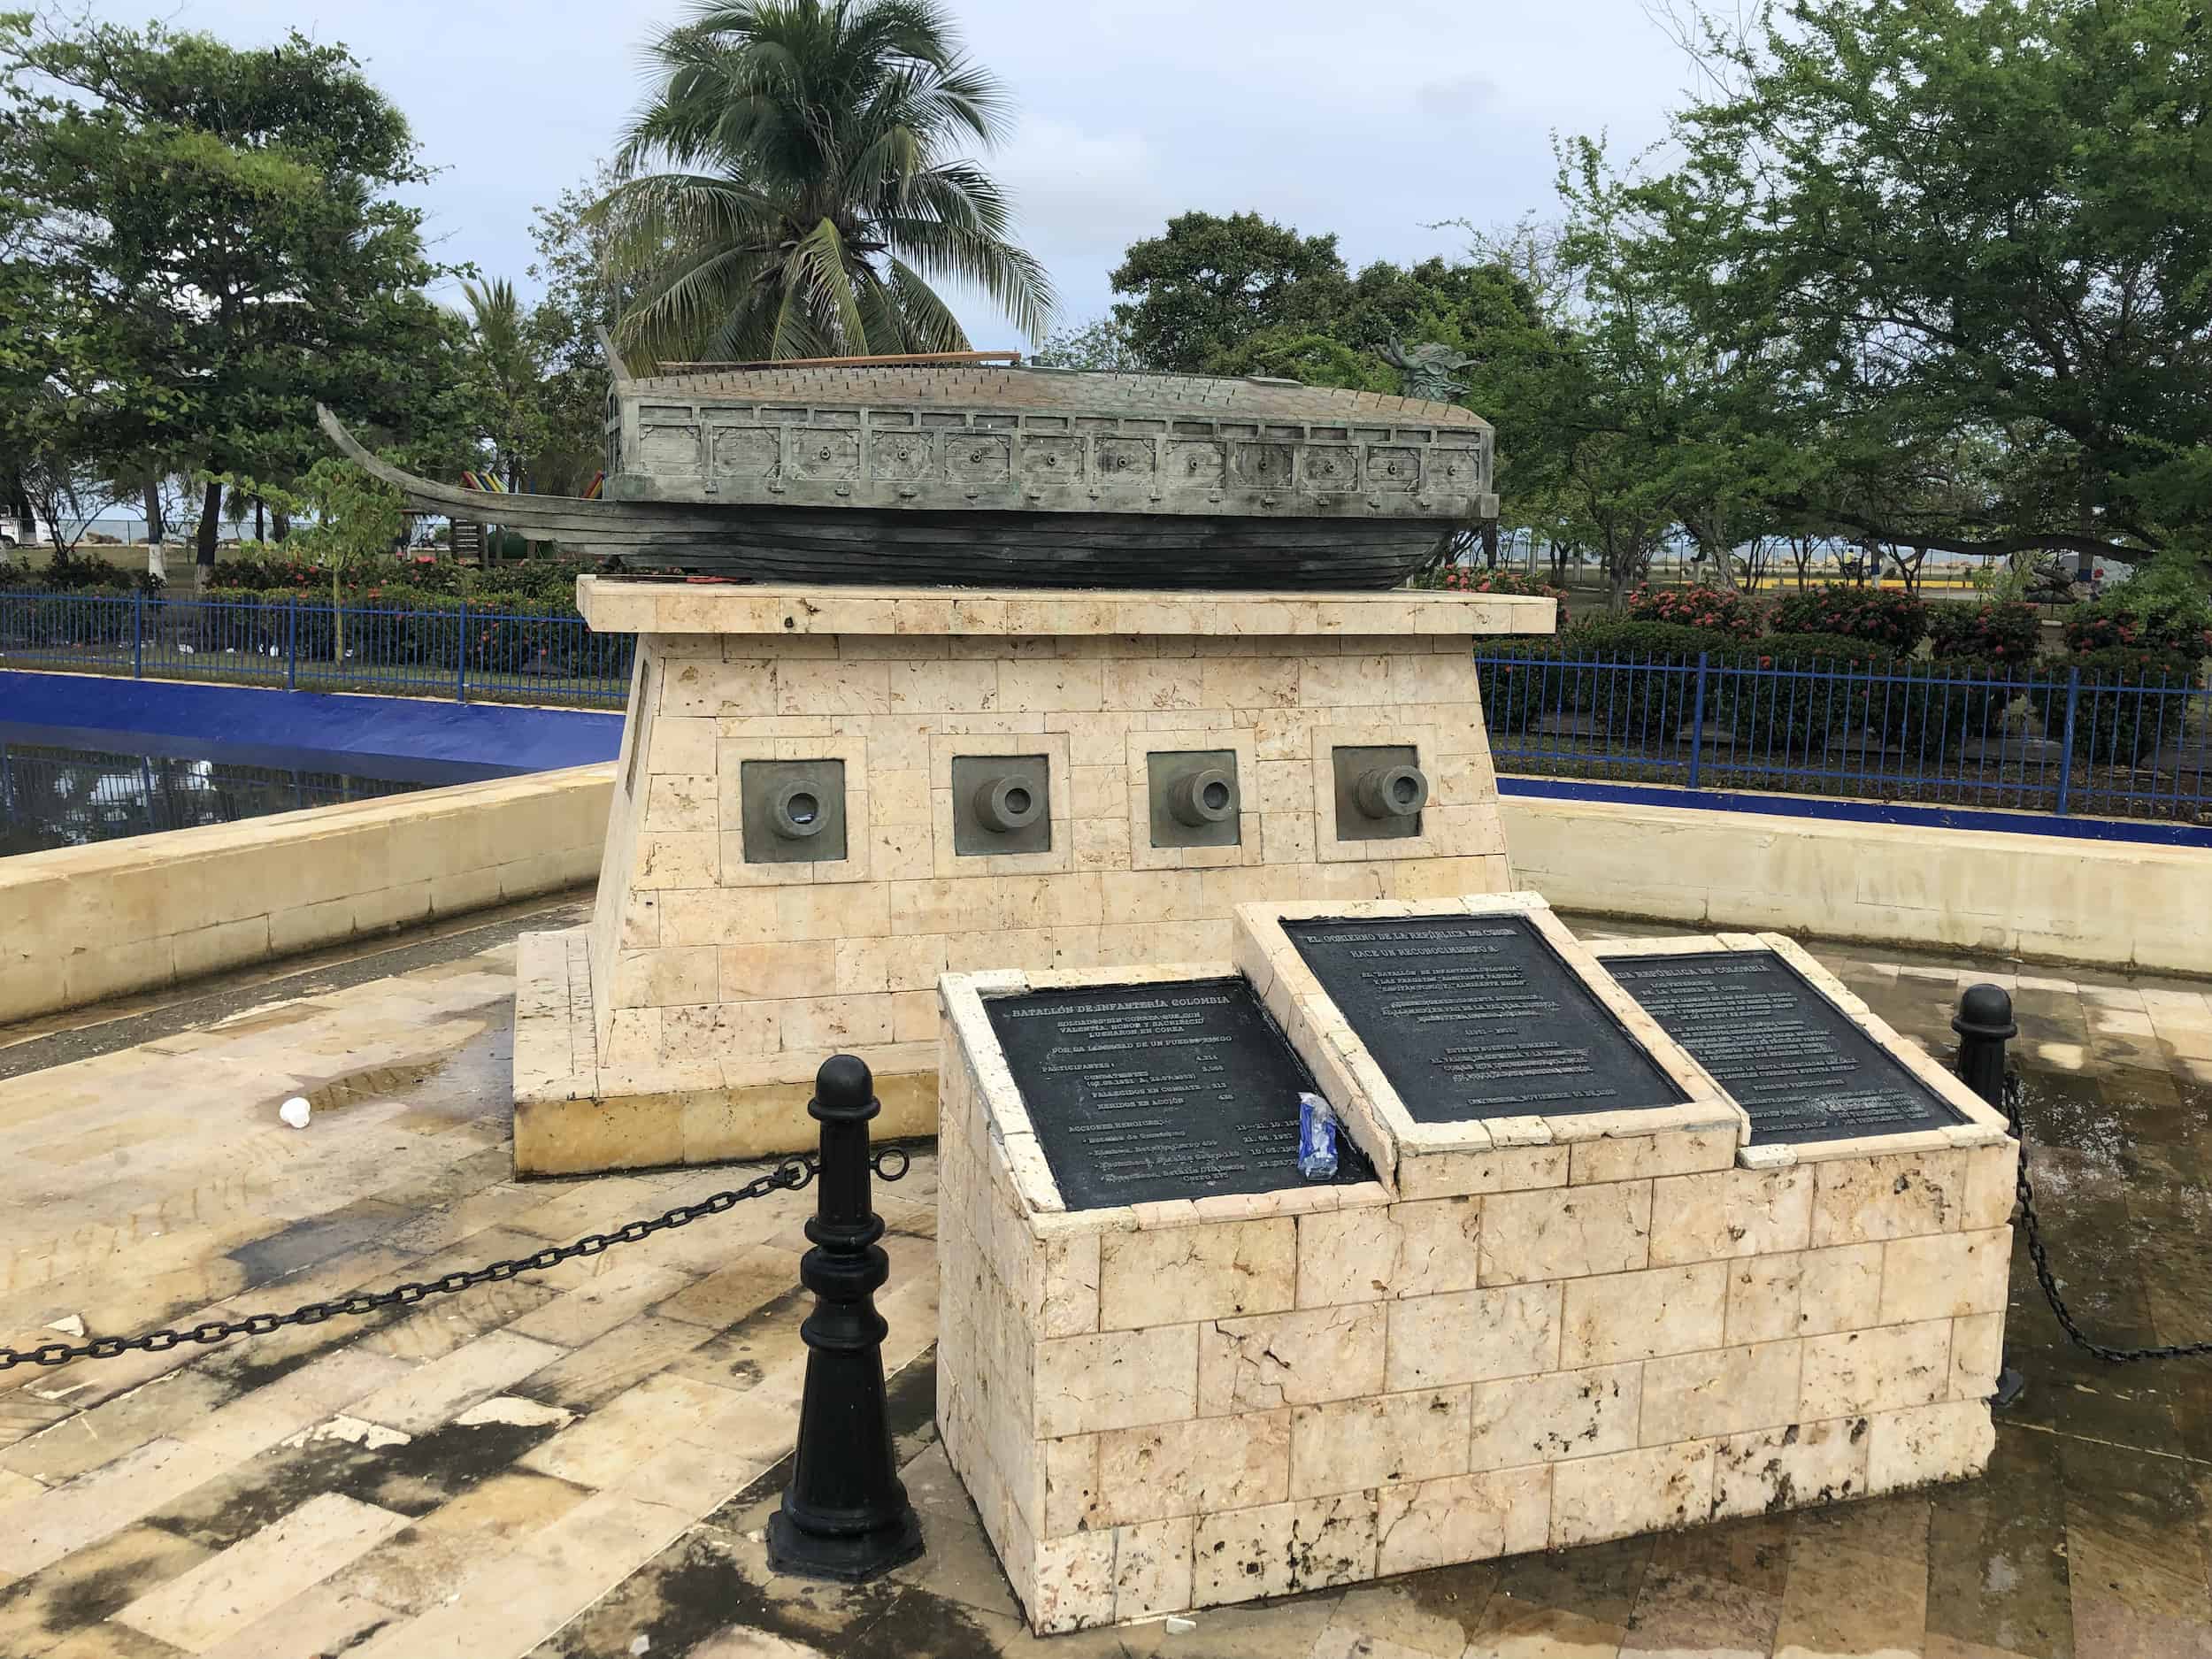 Korean War memorial at Parque de la Marina in Cartagena, Colombia